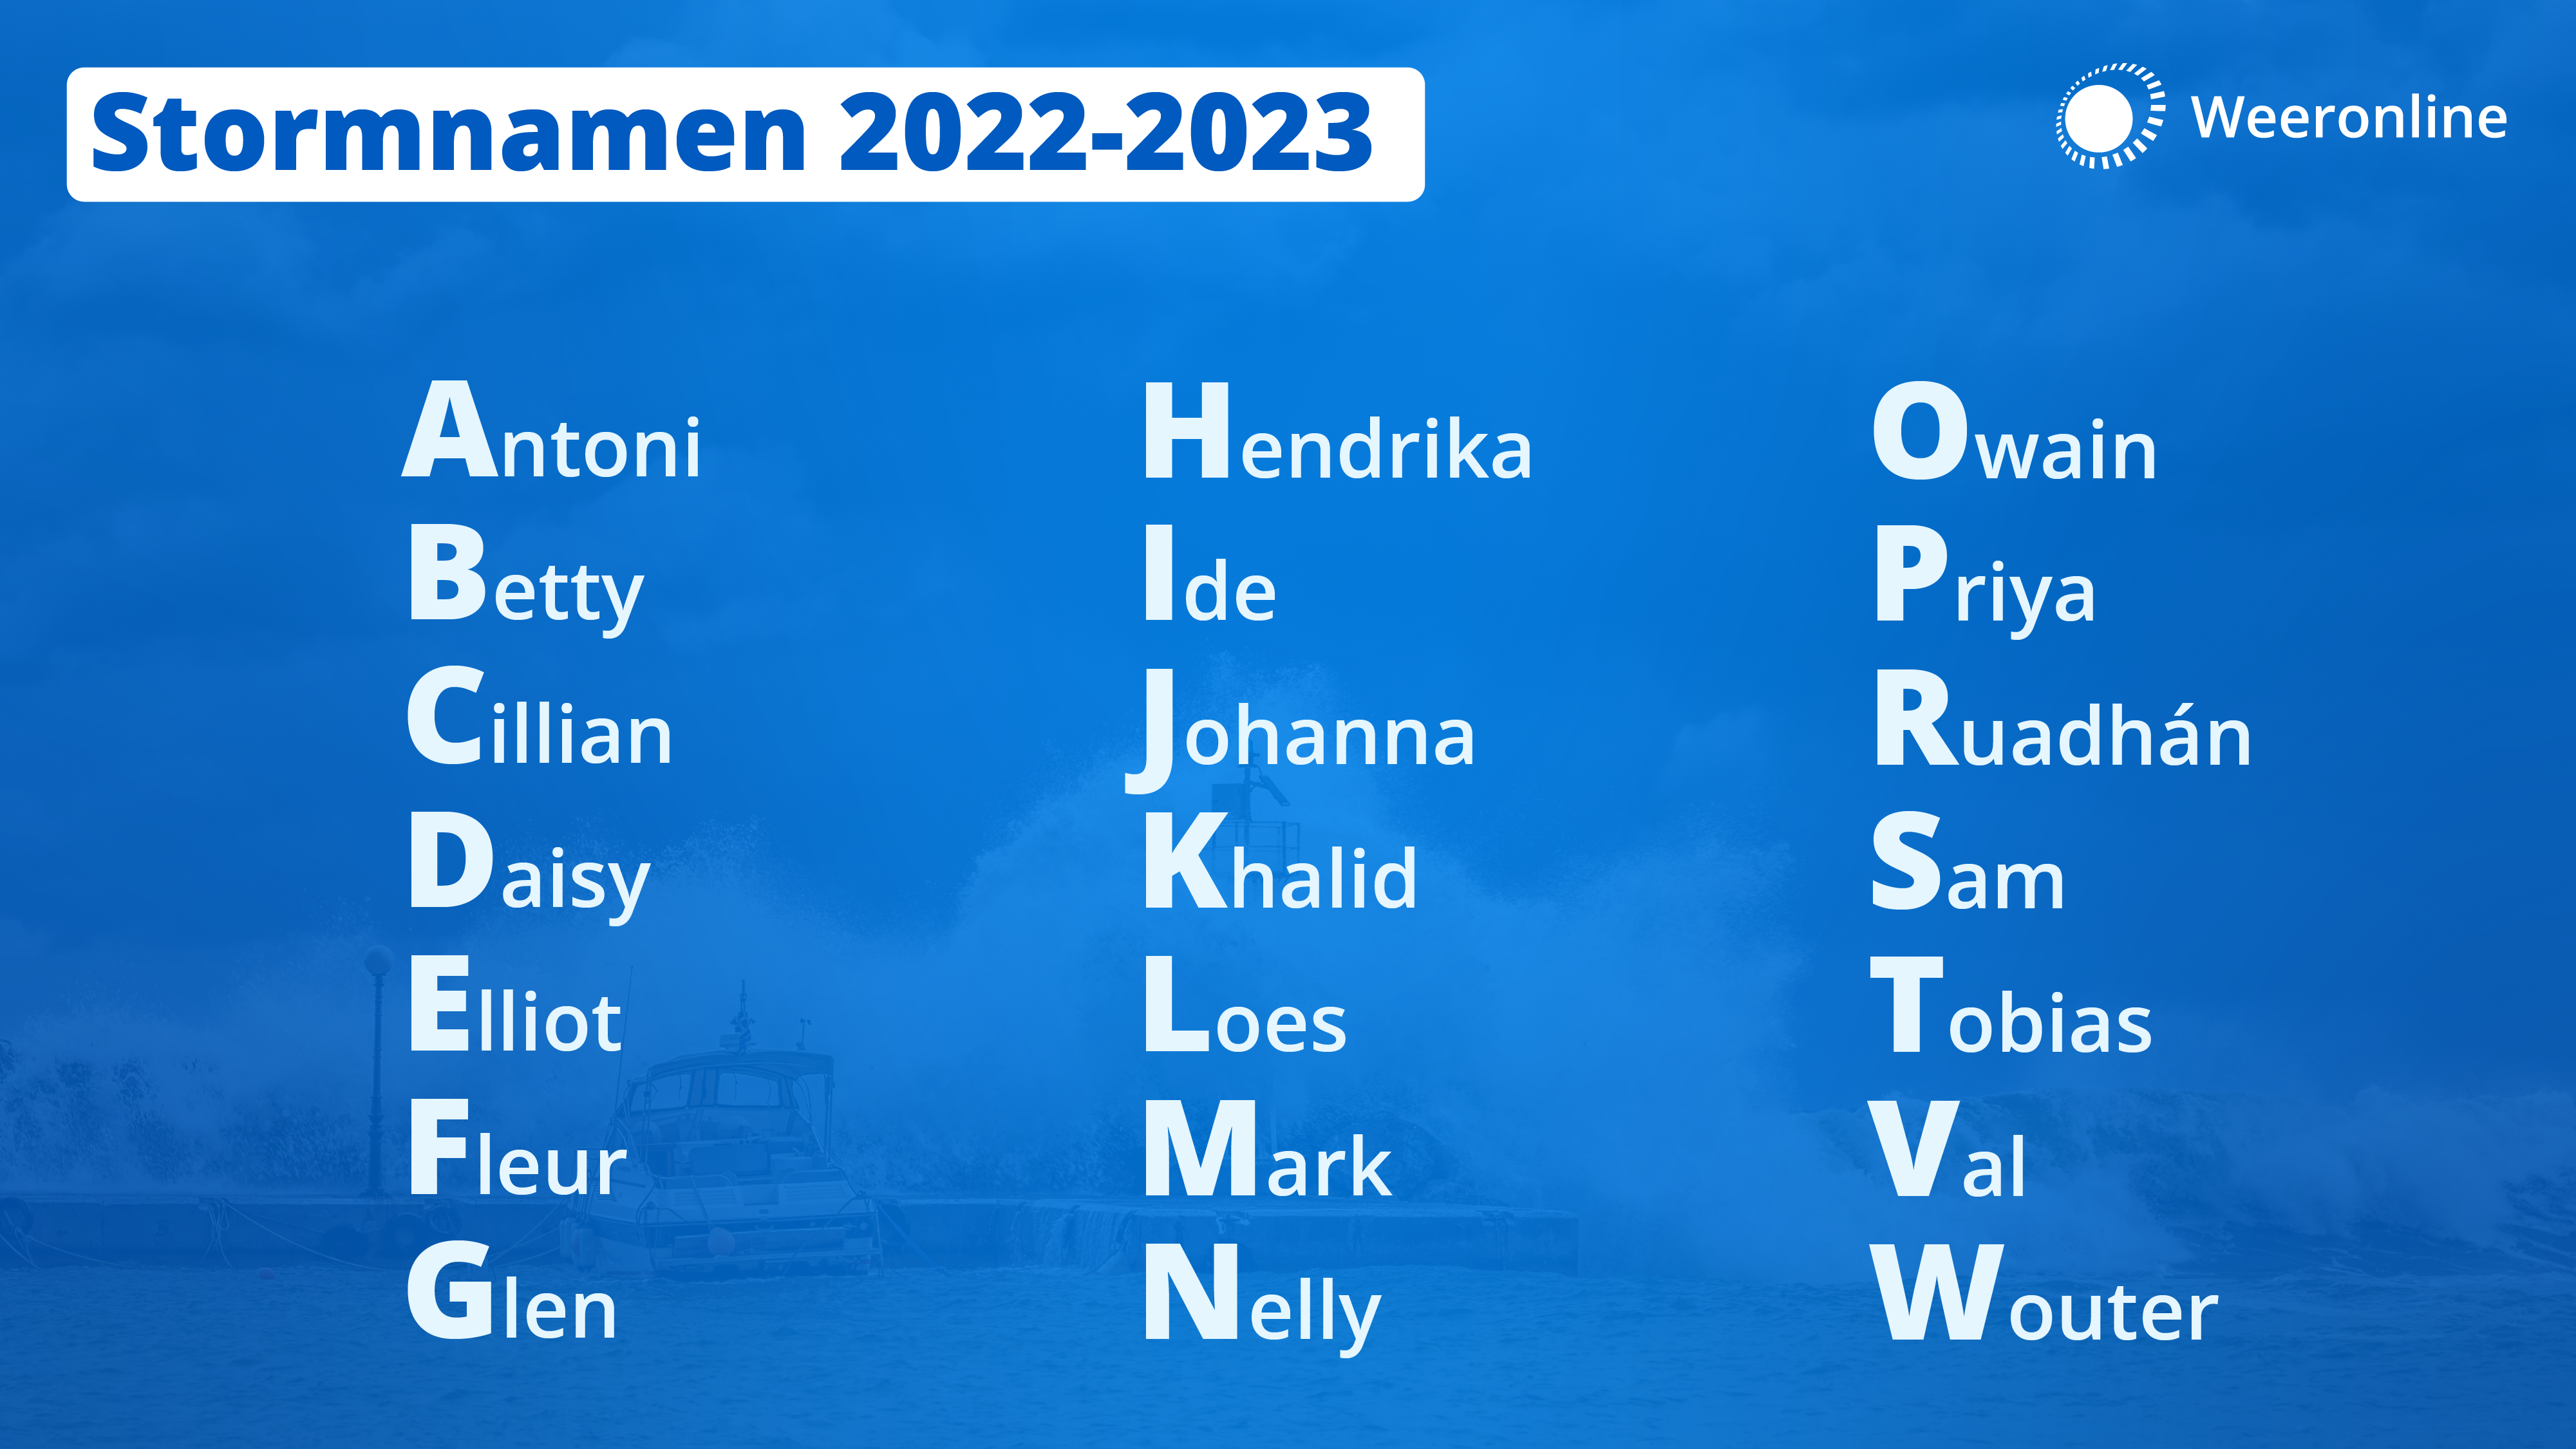 De stormnamen voor het seizoen 2022-2023. De complete namenlijst. De letters Q, U, X, Y en Z worden niet gekoppeld aan een stormnaam.